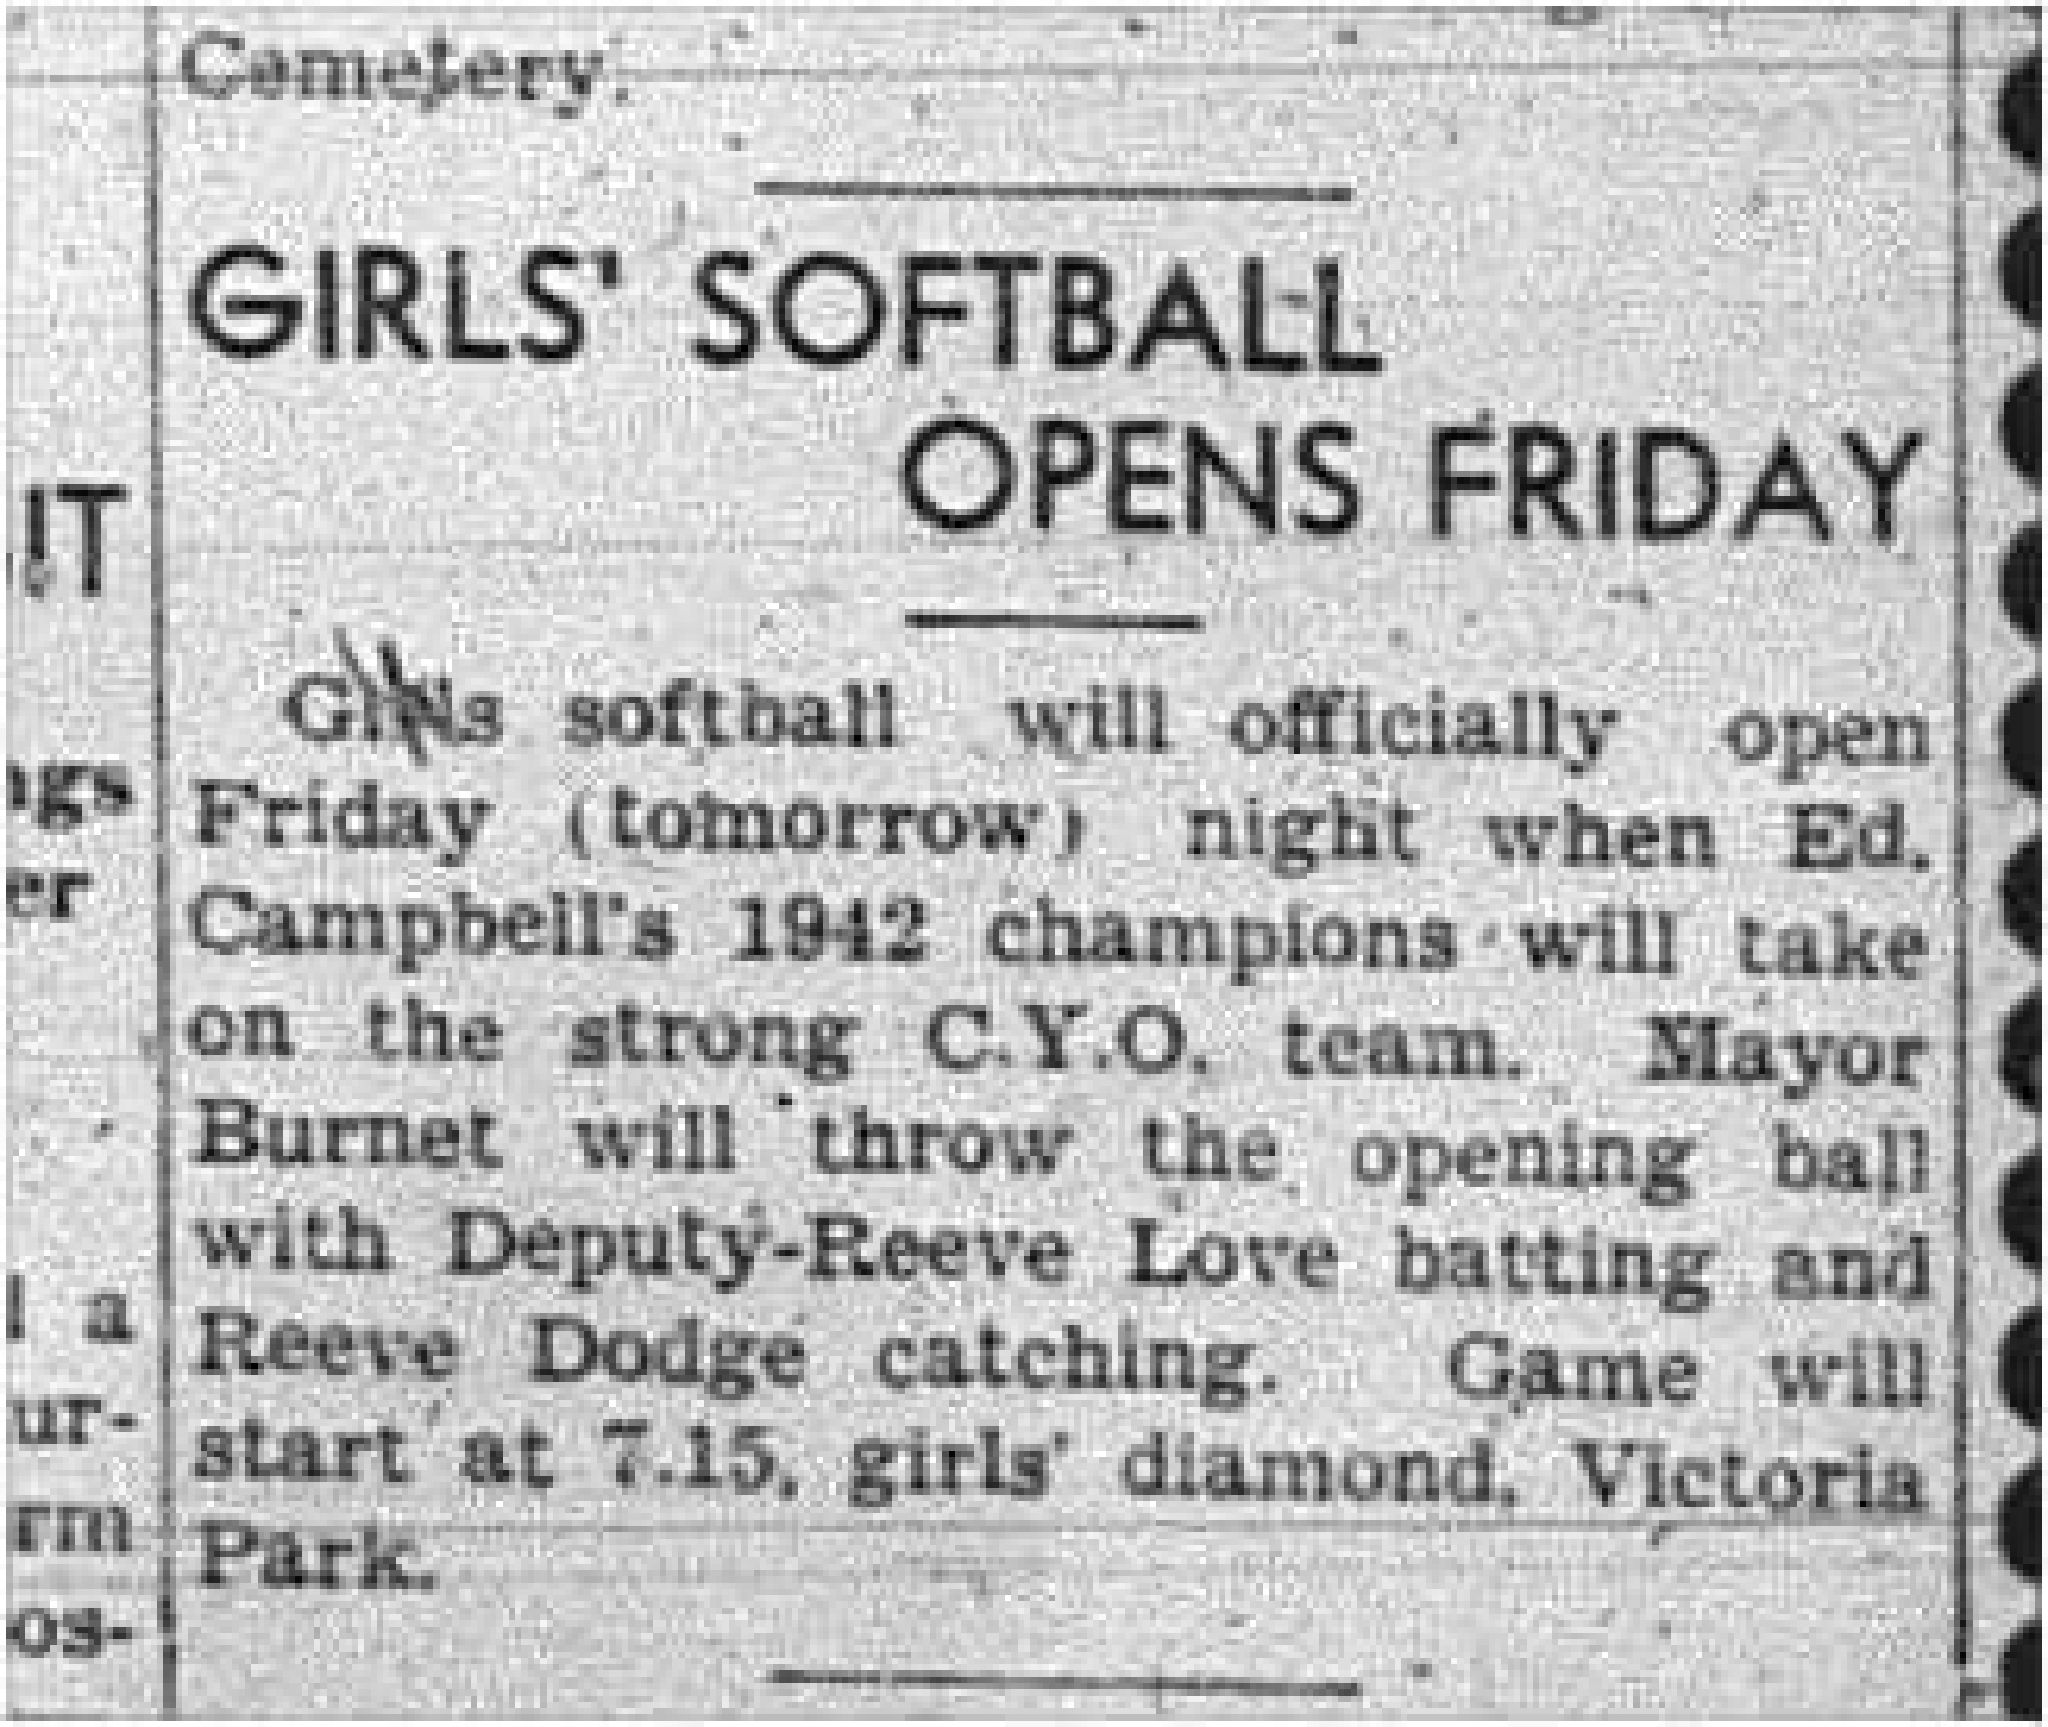 1943-06-17 Softball - Girls